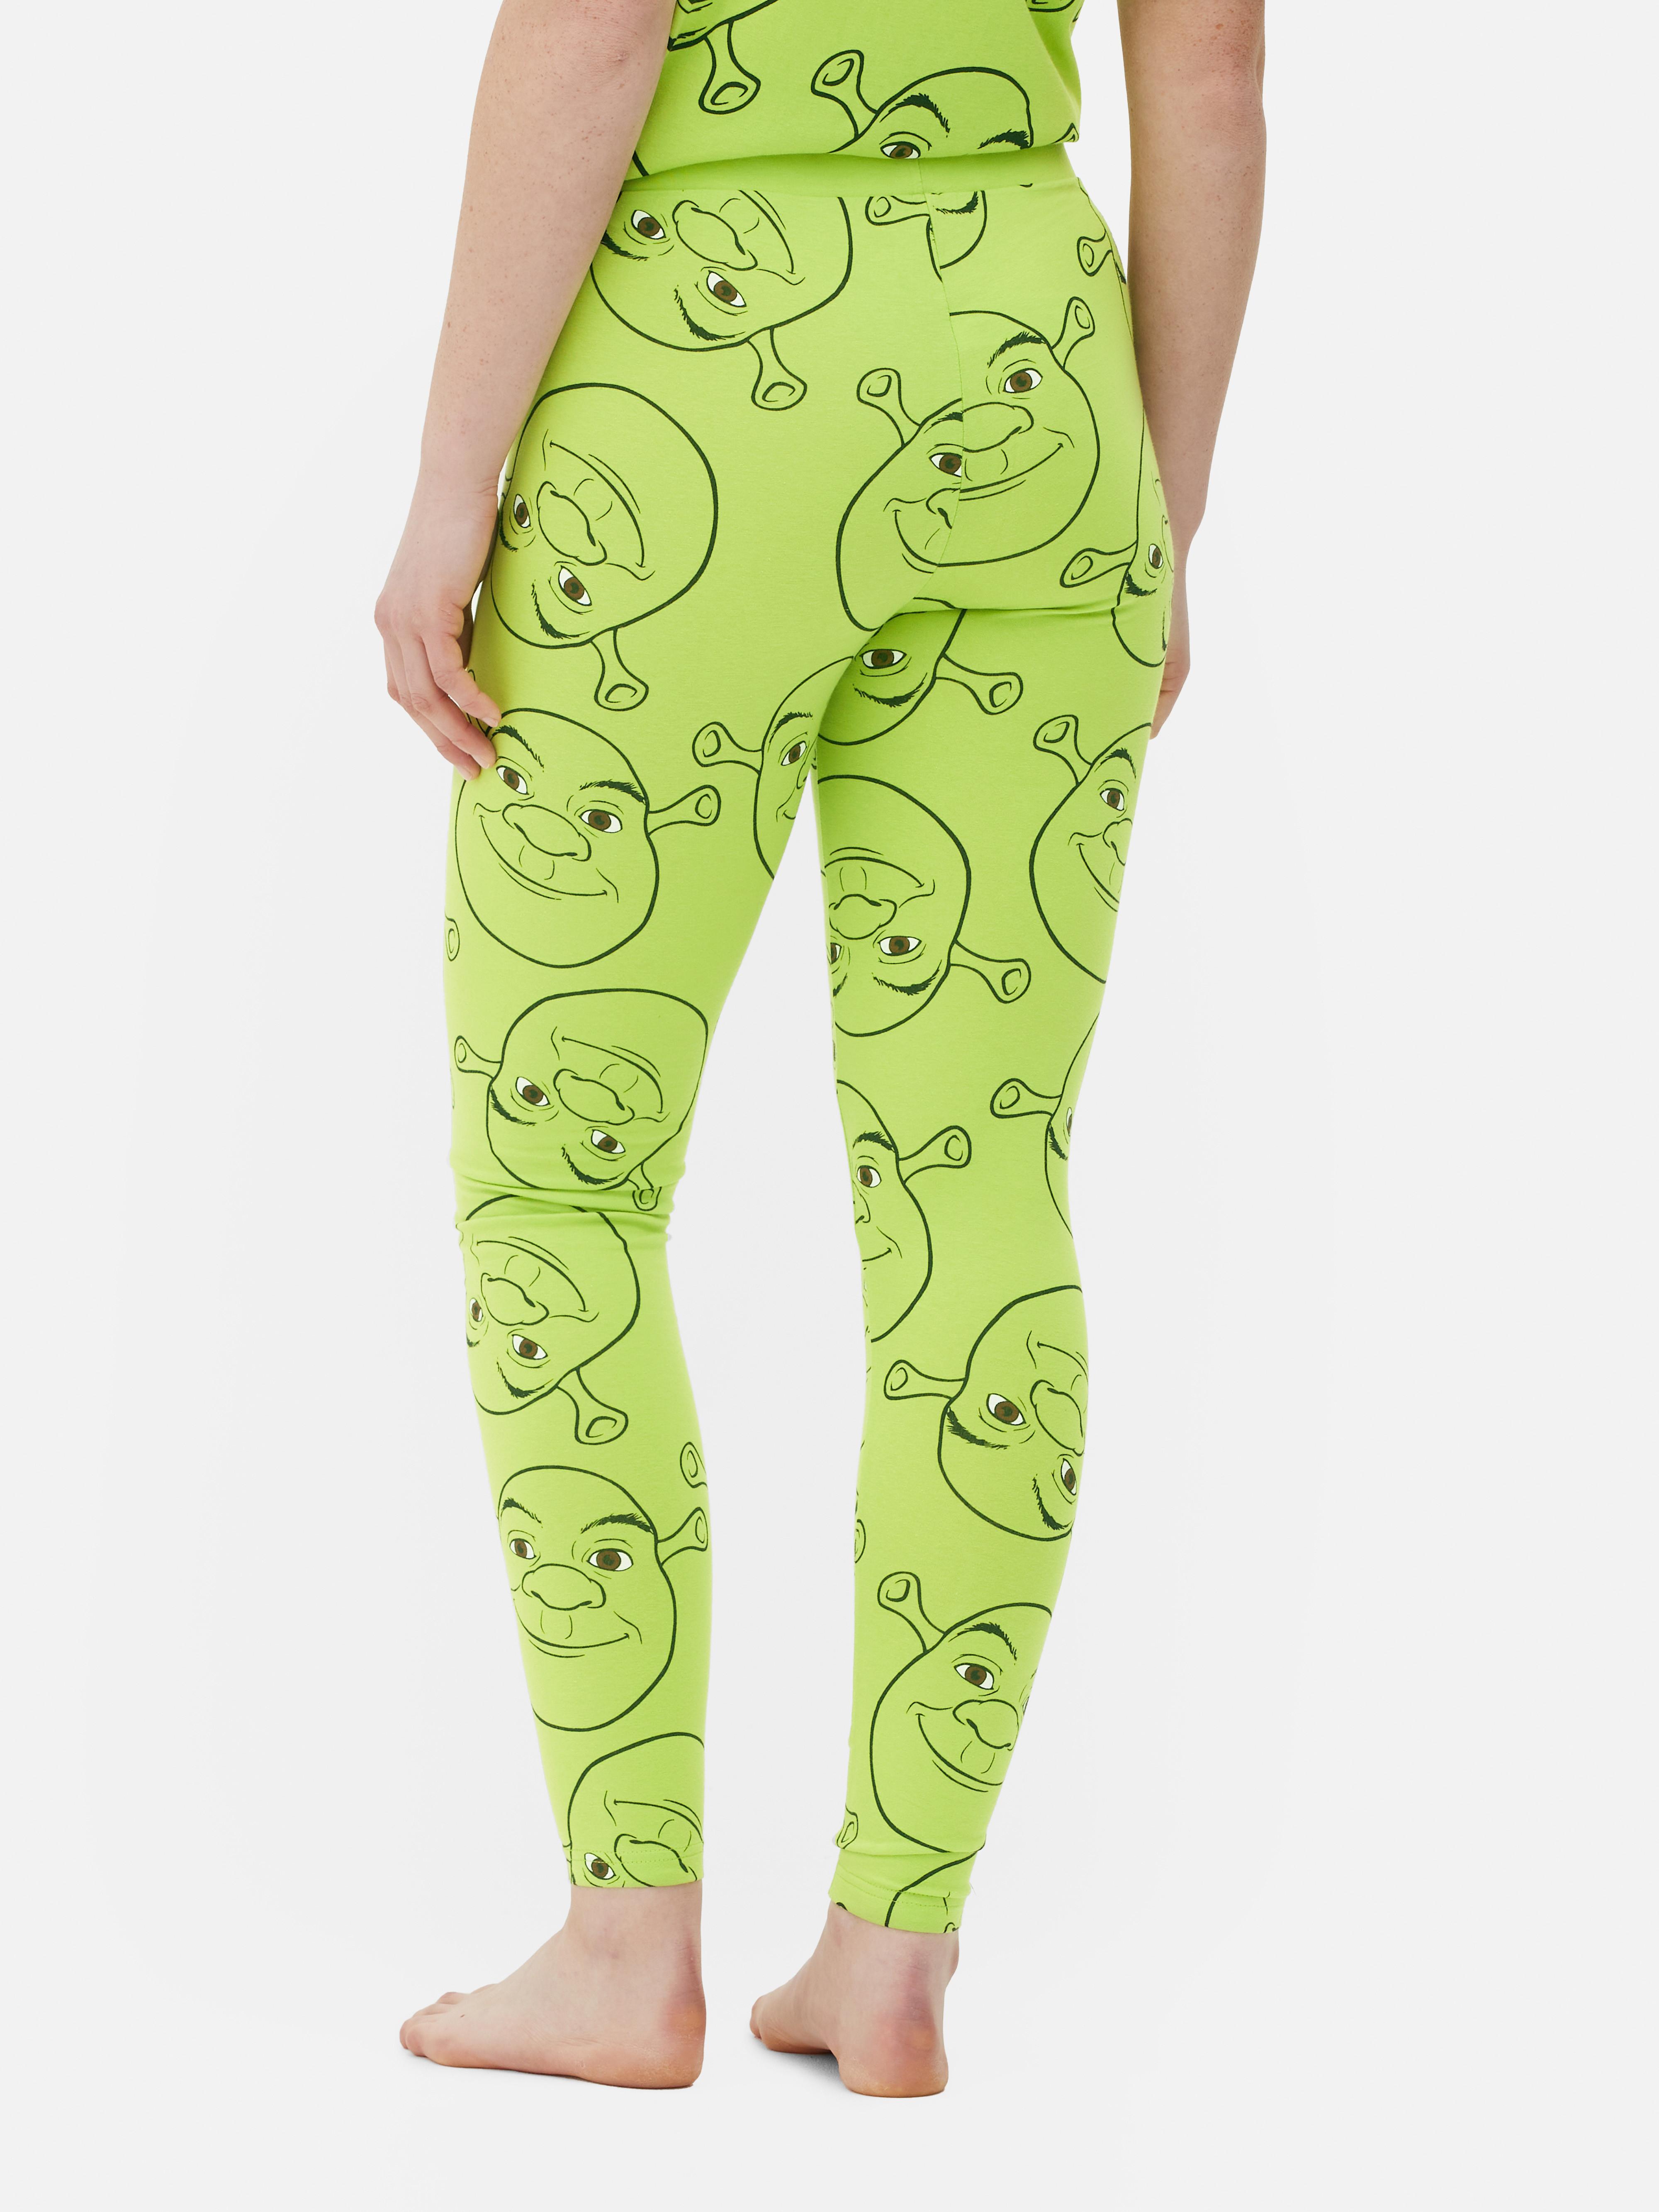 Shrek Pajama Leggings